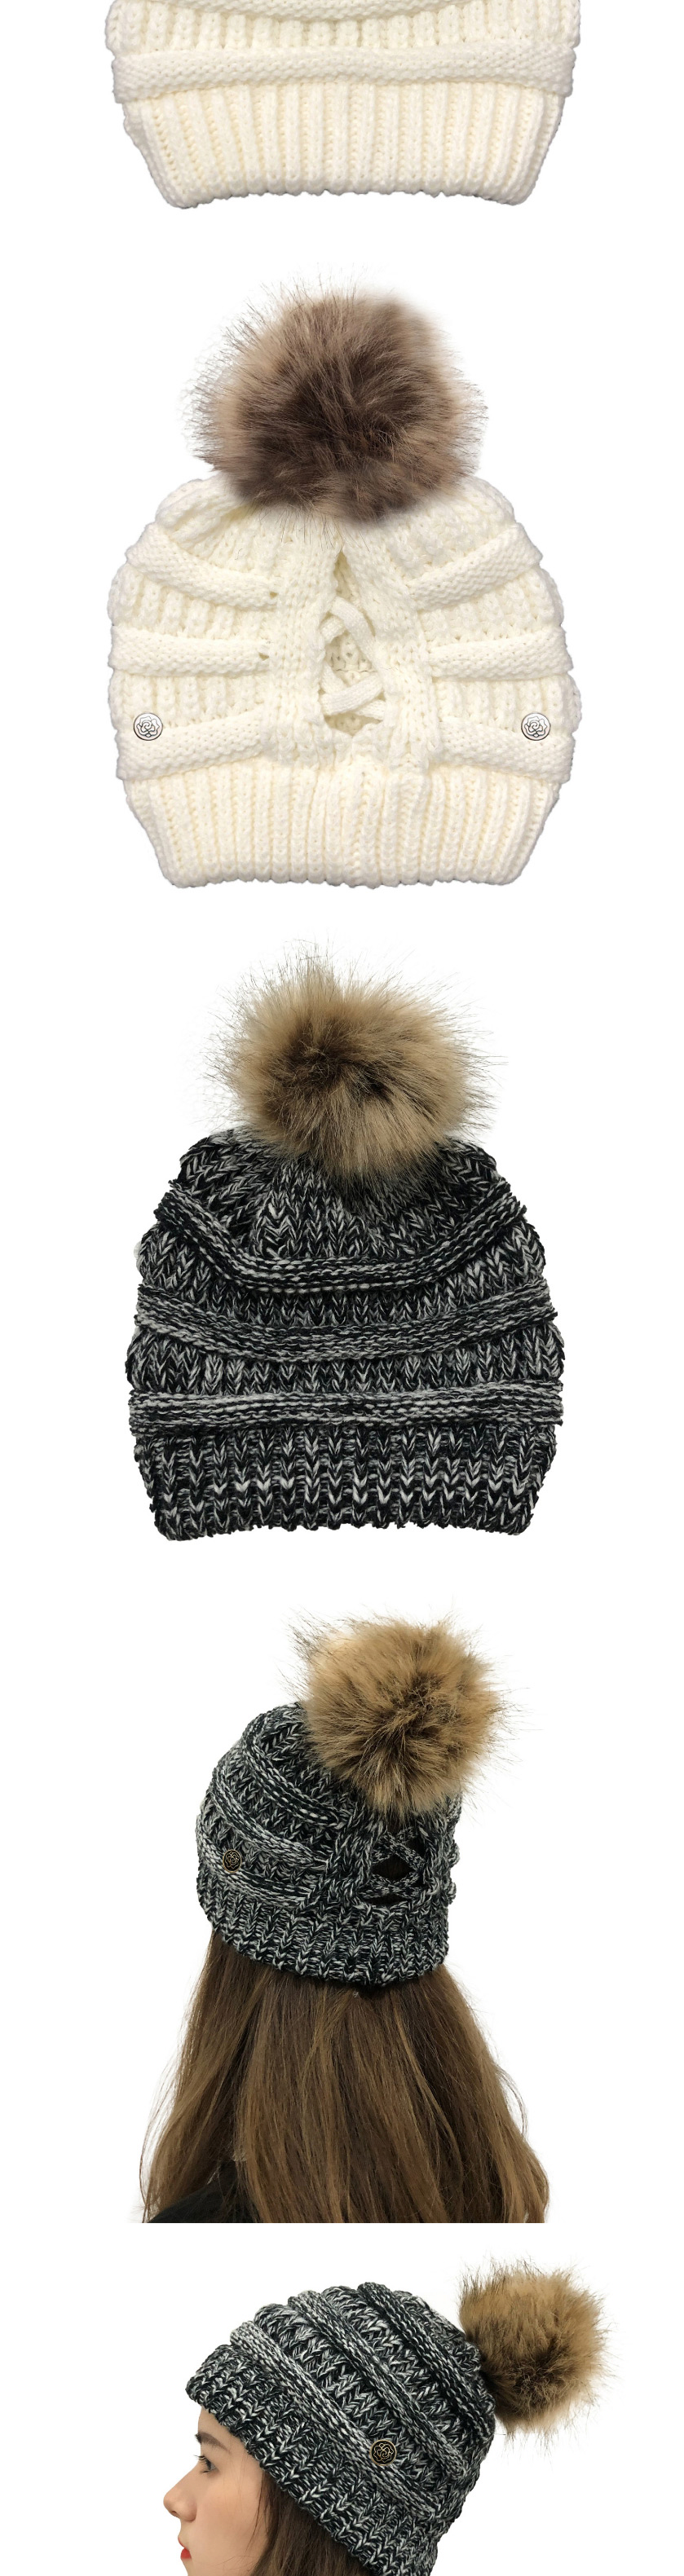 Fashion Beige Button Knitted Cross-belt Woolen Hat,Knitting Wool Hats